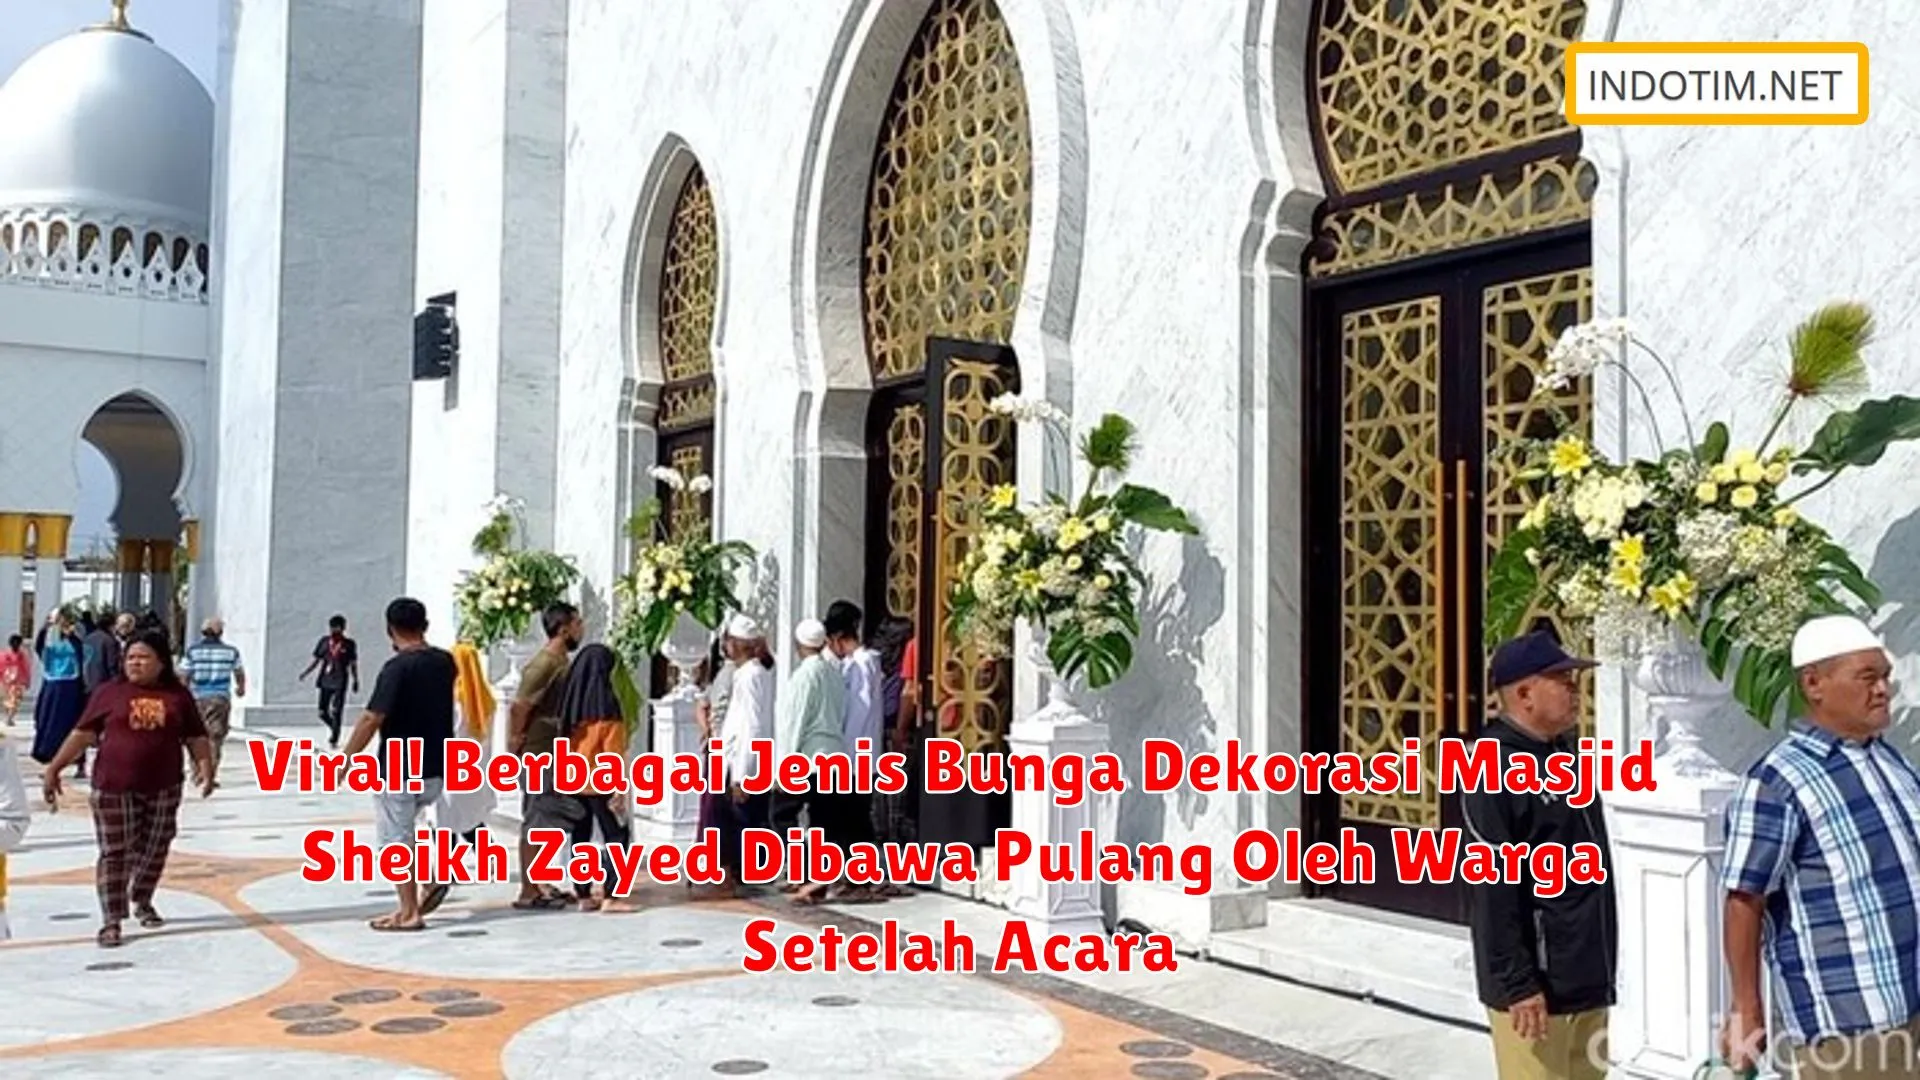 Viral! Berbagai Jenis Bunga Dekorasi Masjid Sheikh Zayed Dibawa Pulang Oleh Warga Setelah Acara